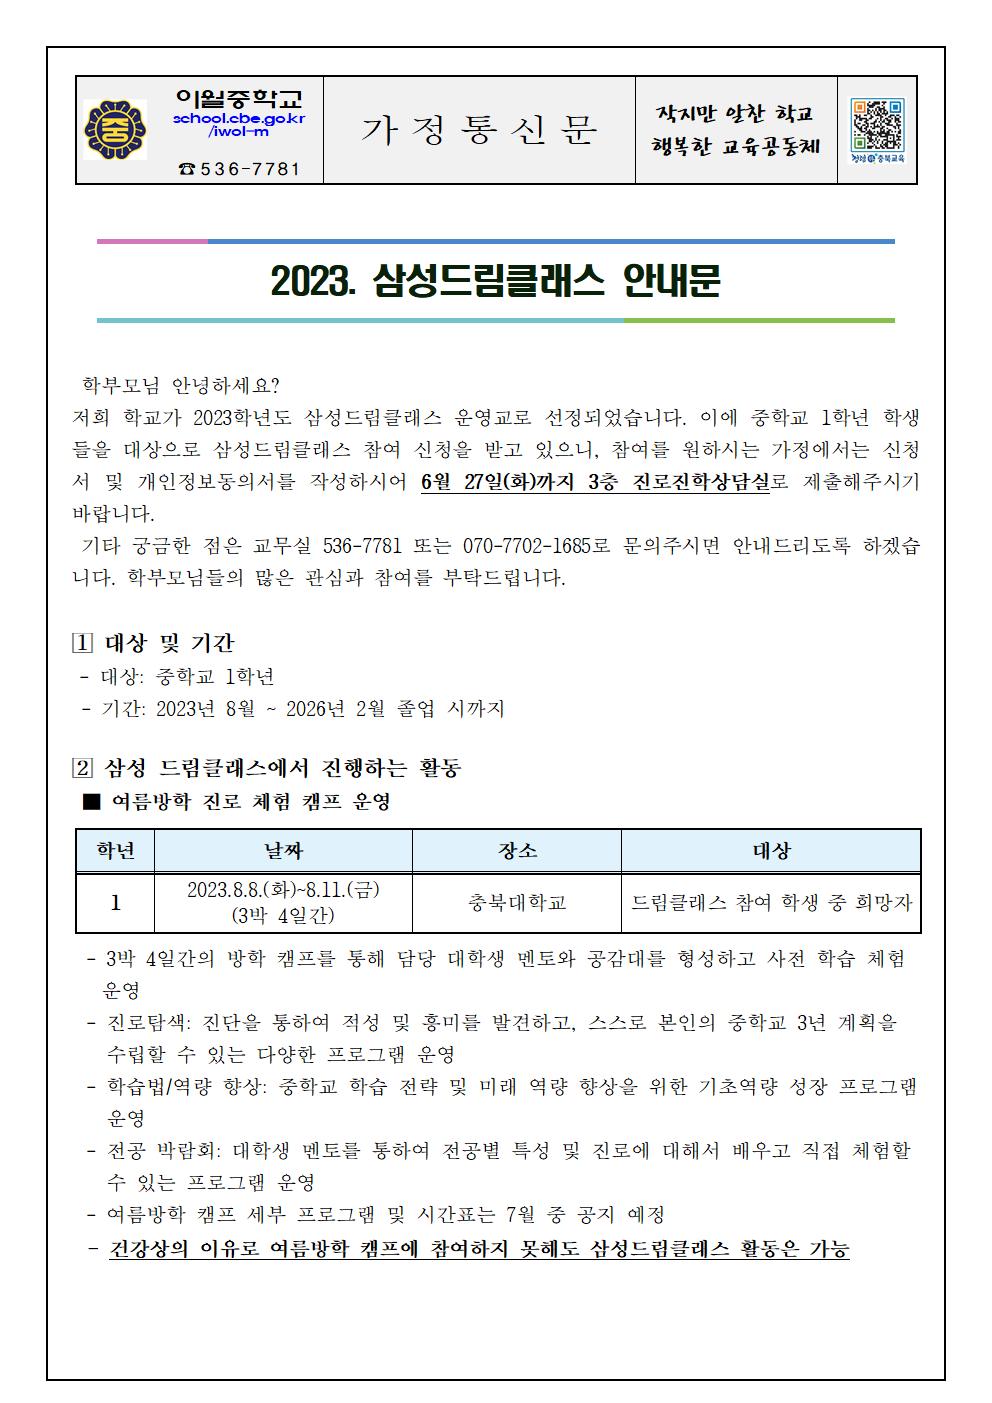 2023. 삼성드림클래스 안내 가정통신문001